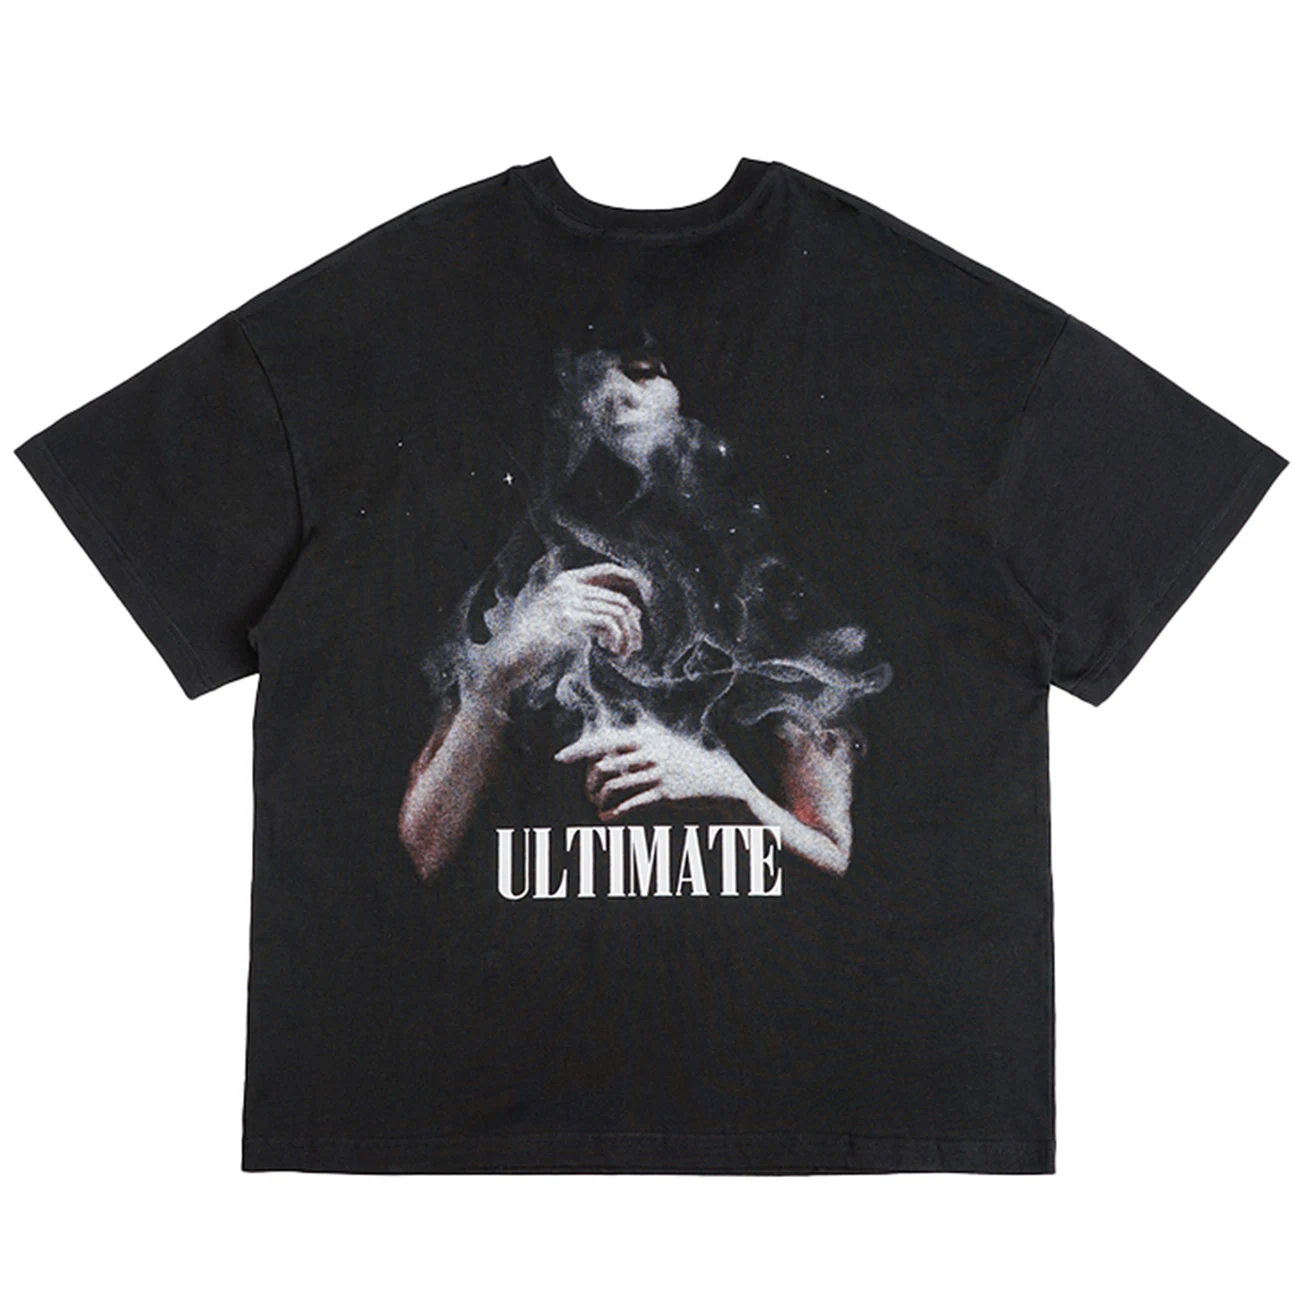 

LACIBLE Tshirts Hip Hop Harajuku Creative Print Punk Rock Gothic Tees Shirts Streetwear Fashion Casual Cotton Short Sleeve Tops